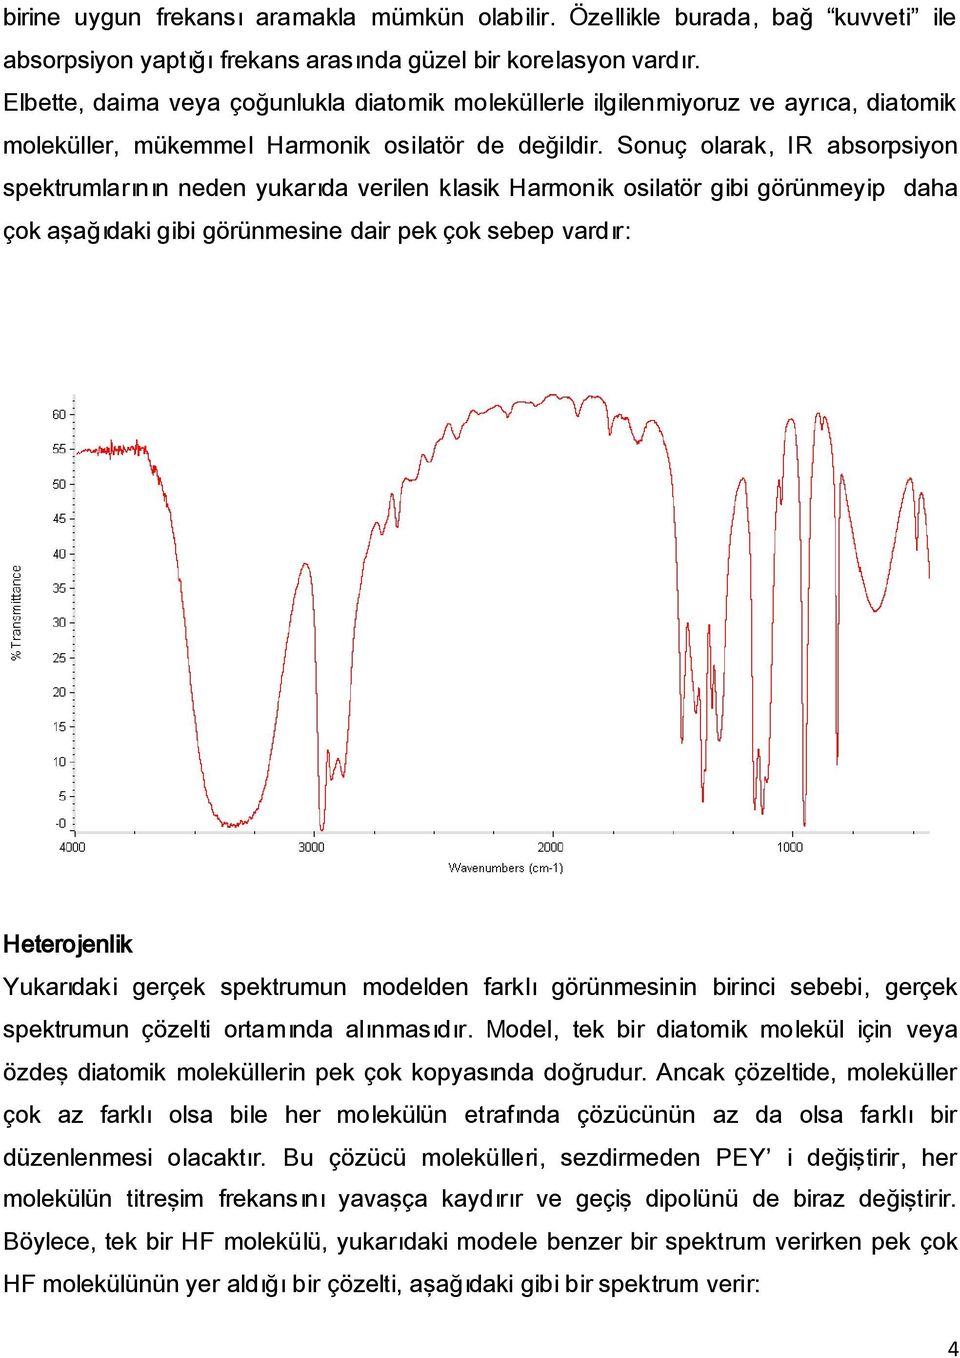 Sonuç olarak, IR absorpsiyon spektrumlarının neden yukarıda verilen klasik Harmonik osilatör gibi görünmeyip daha çok aşağıdaki gibi görünmesine dair pek çok sebep vardır: Heterojenlik Yukarıdaki